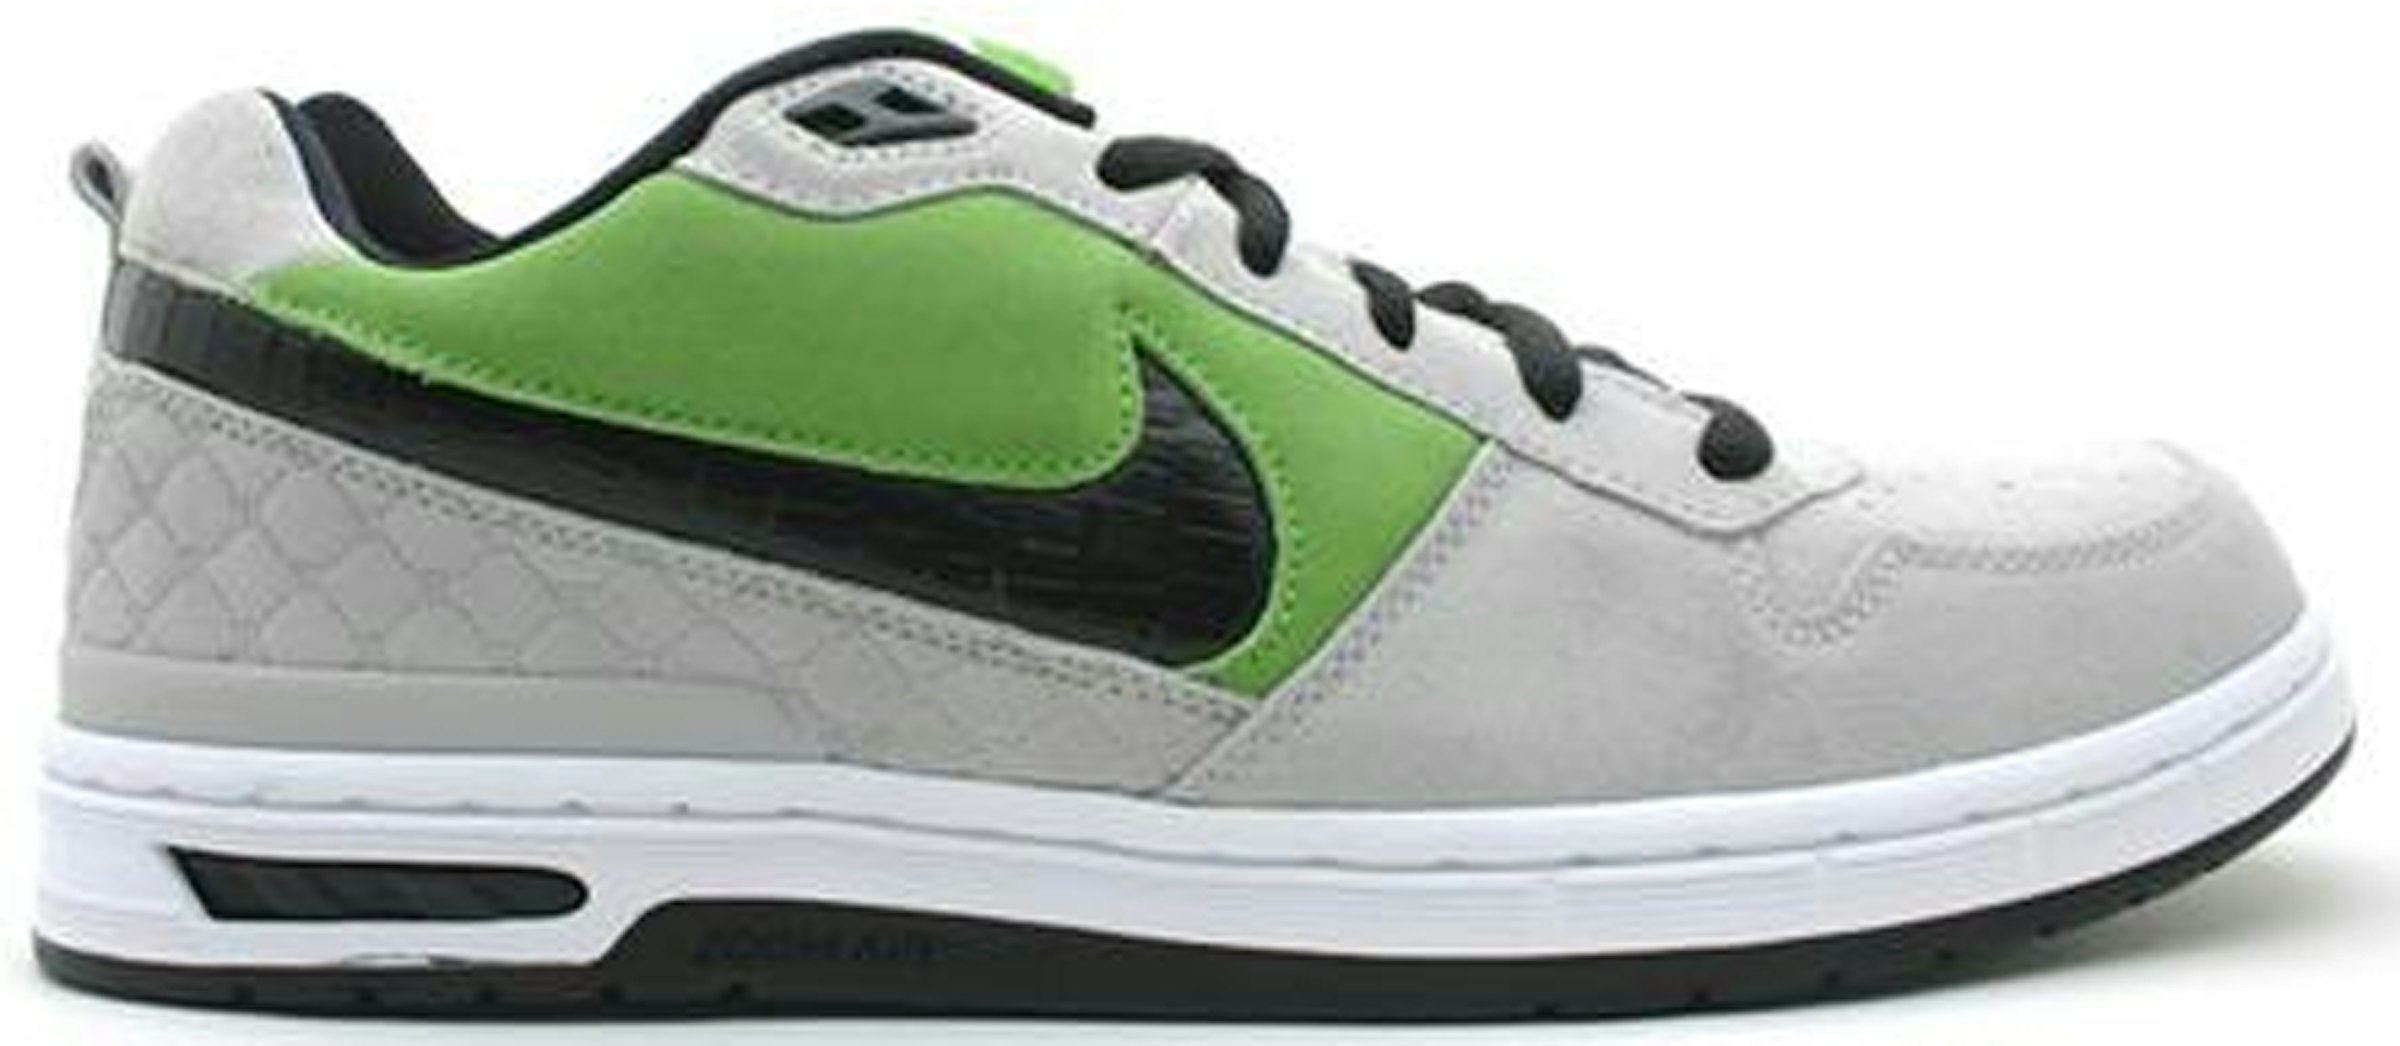 Nike SB Paul Rodriguez Green Bean - 310802-301 - US